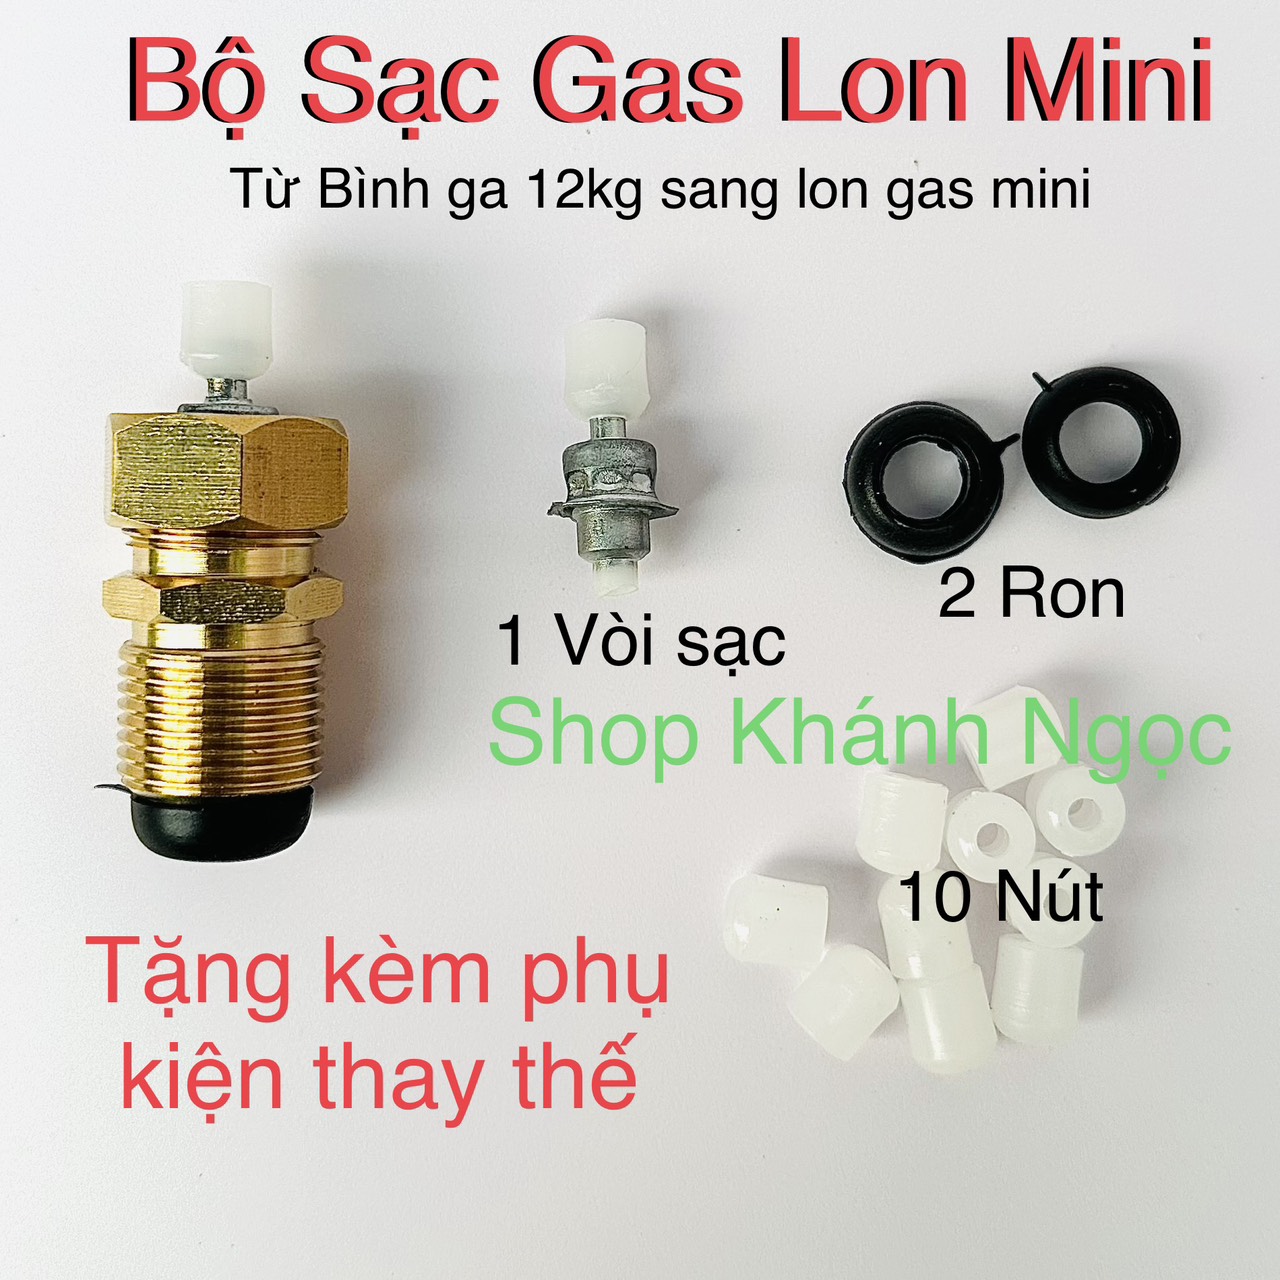 Đầu sạc gas mini - bình gas 12kg sang bình ga mini  đầu chiết sạc bình gas mini +Tặng kèm 10 nút nhựa kèm ron - bếp gas mini